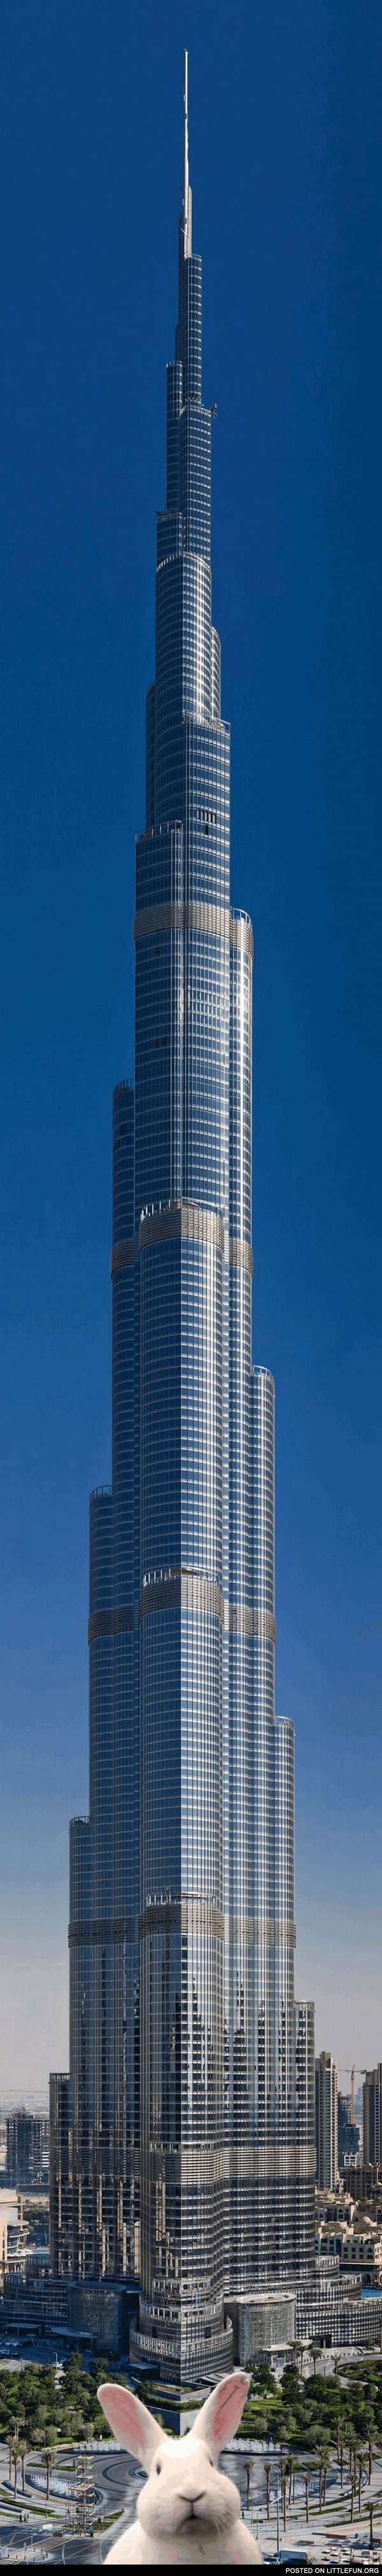 Picture of the Burj Dubai